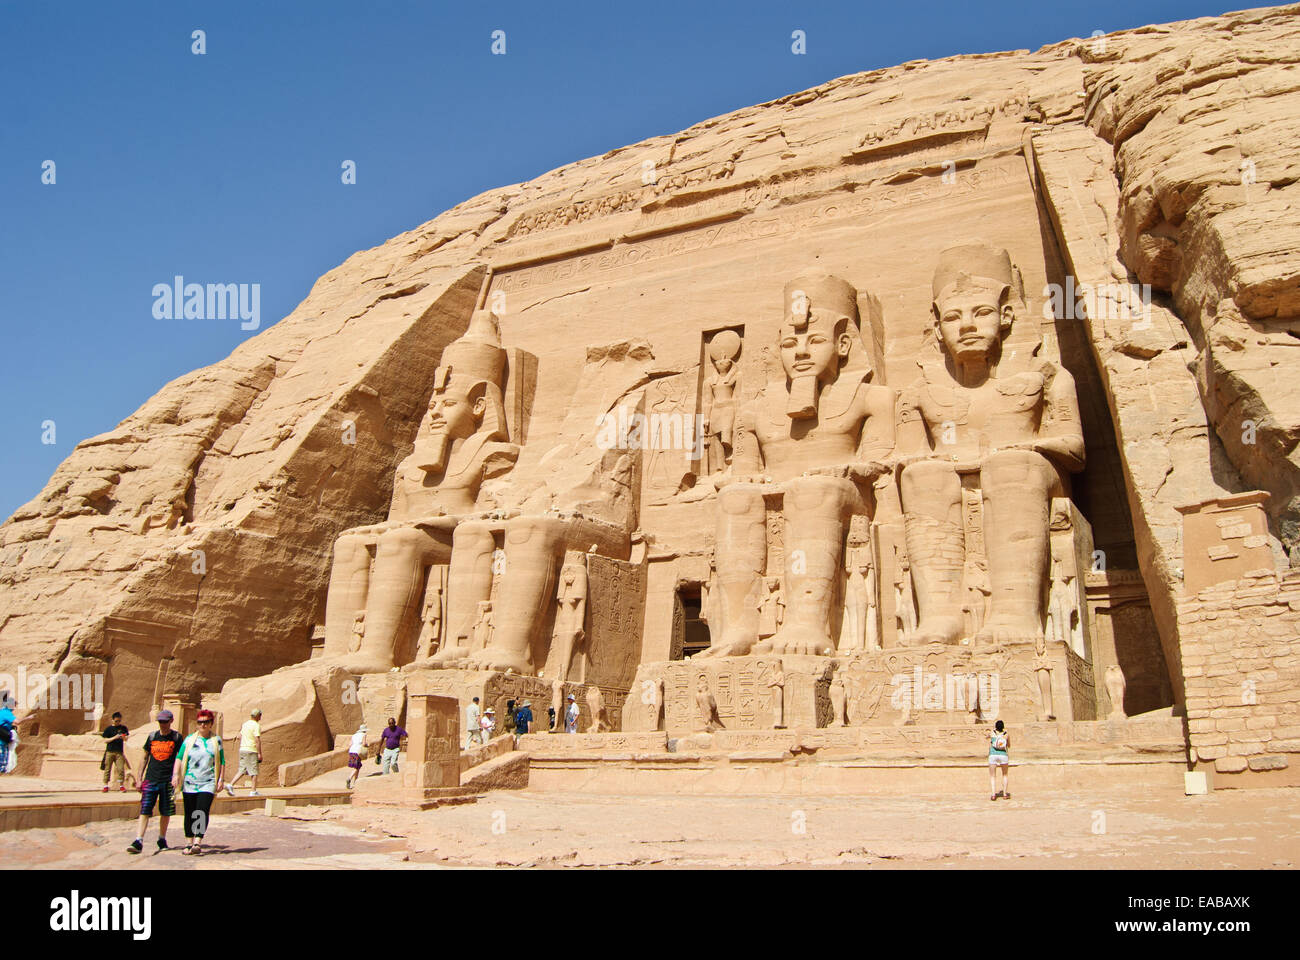 Abu Simbel ancient temples Stock Photo